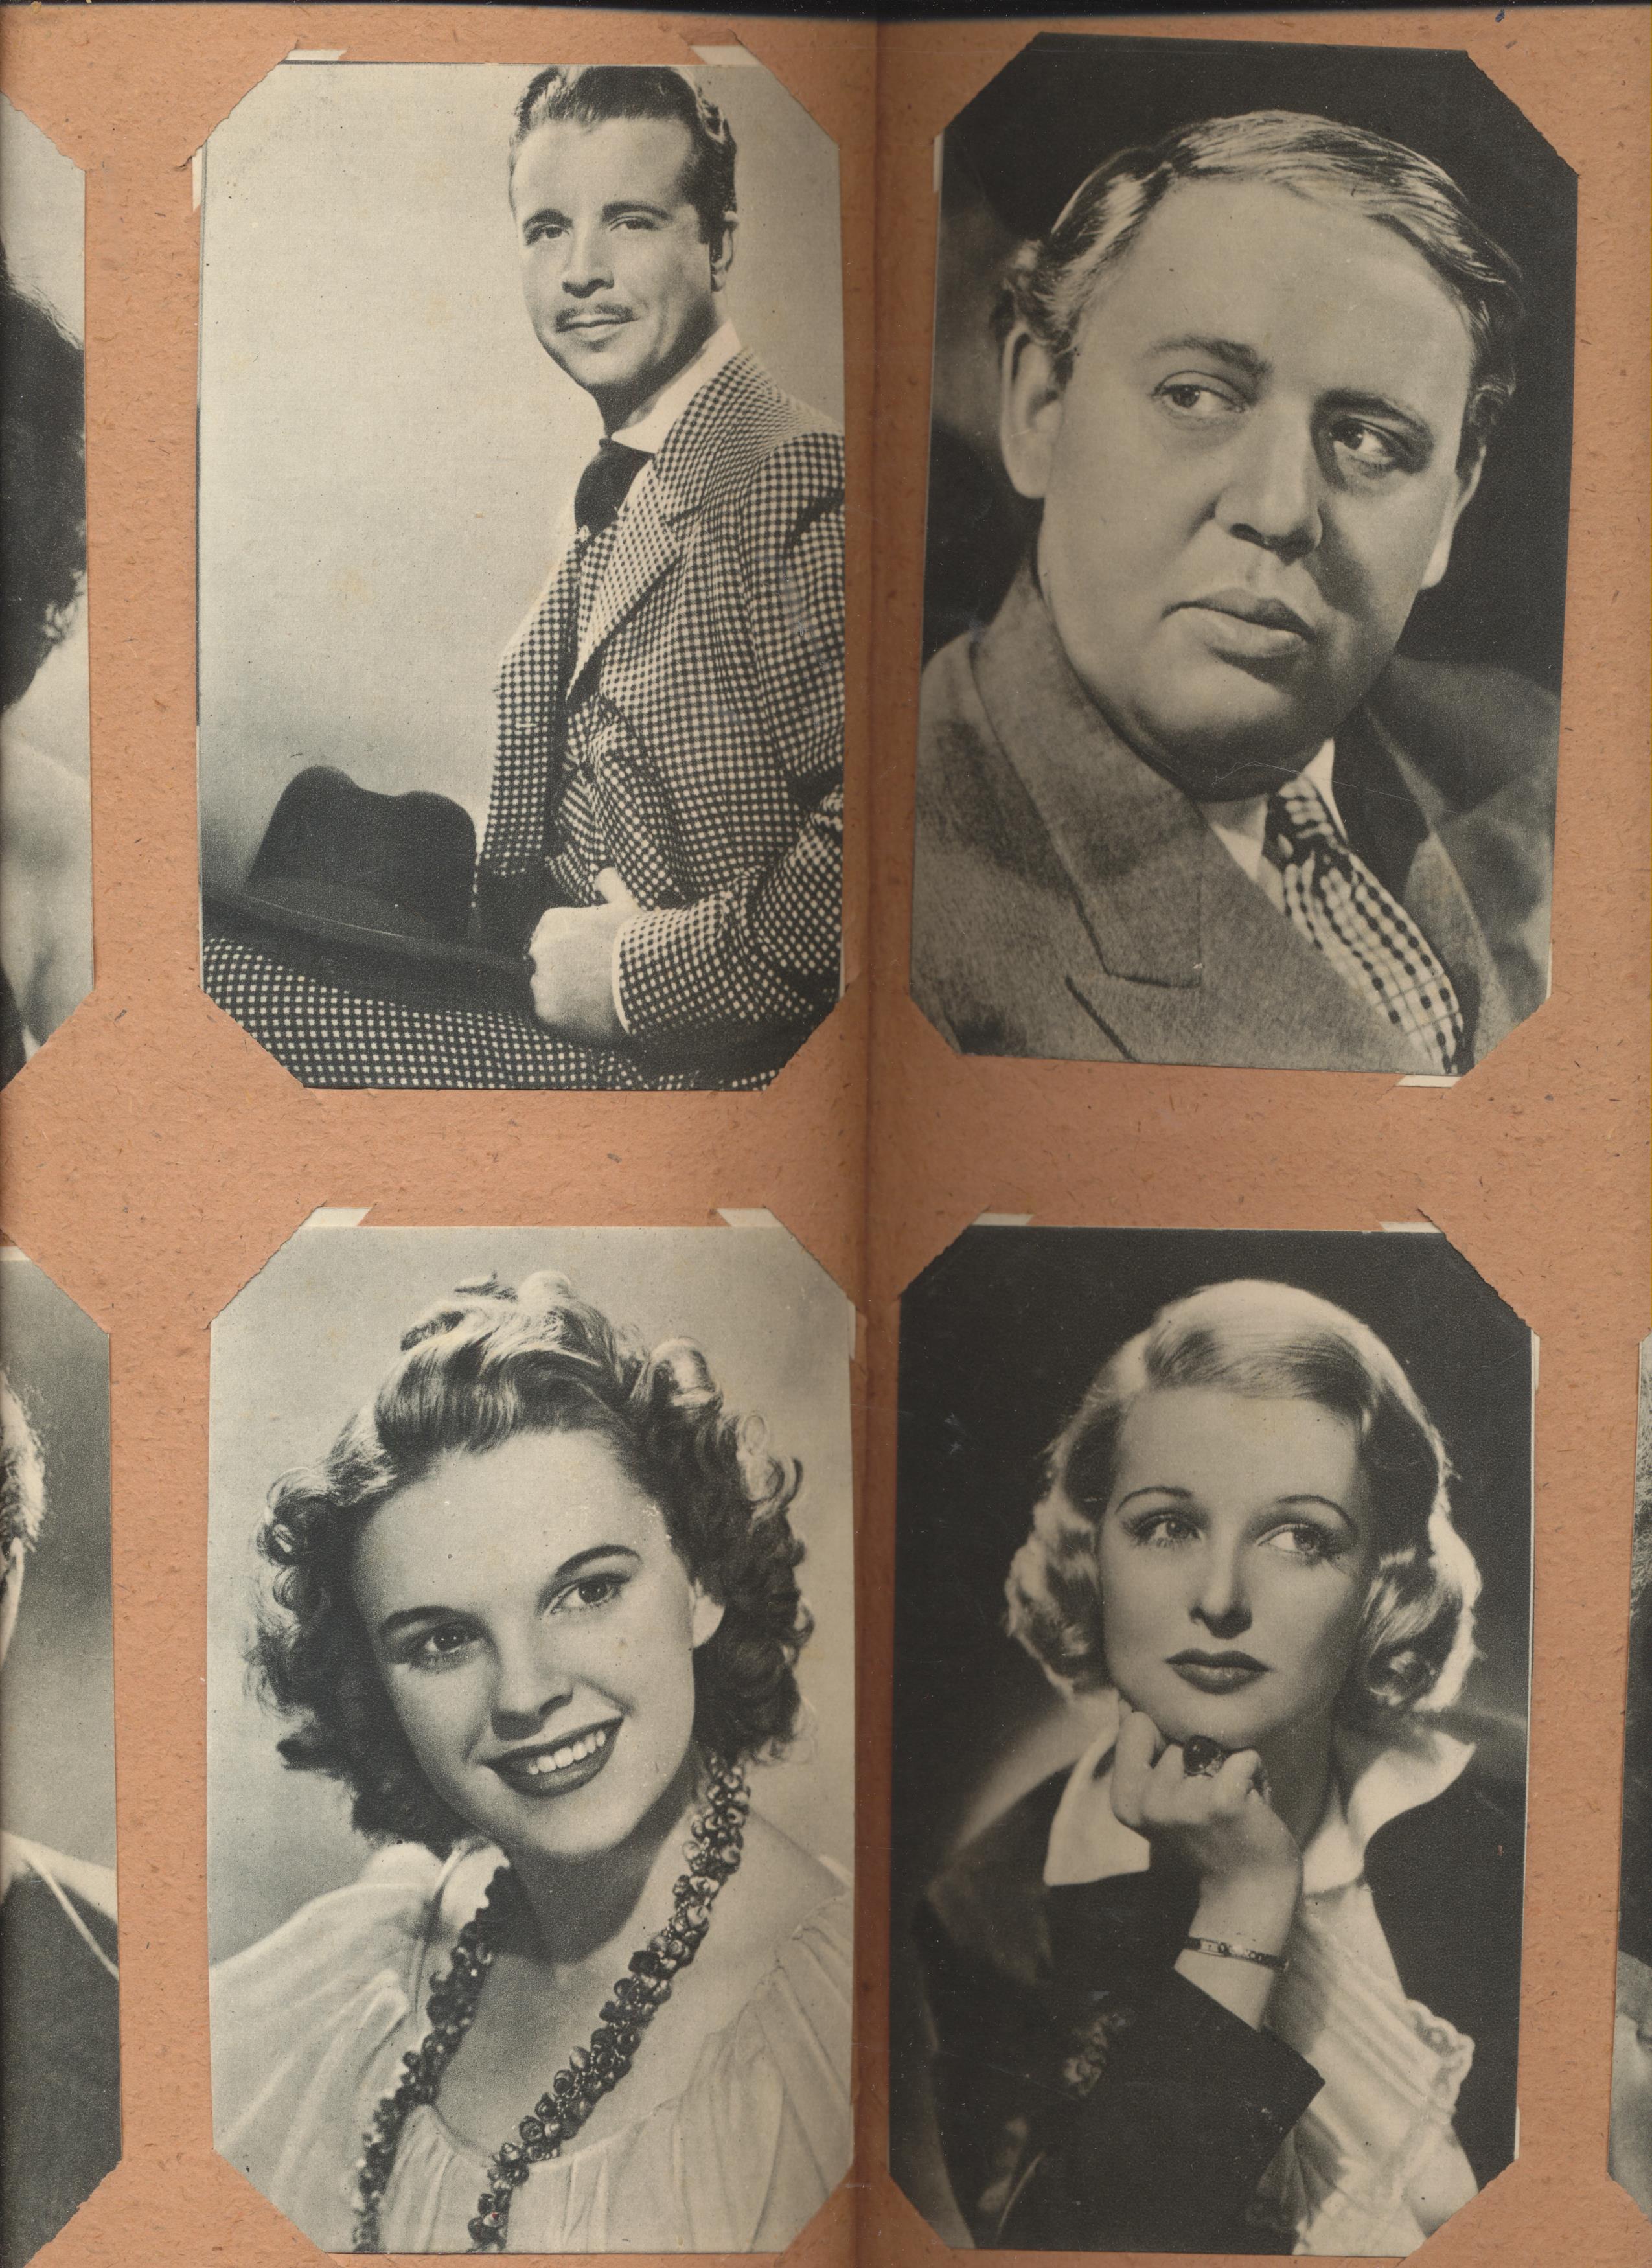 Álbum de Artistas Cinematográficos. Álbum con 112 postales de 120. 1940?